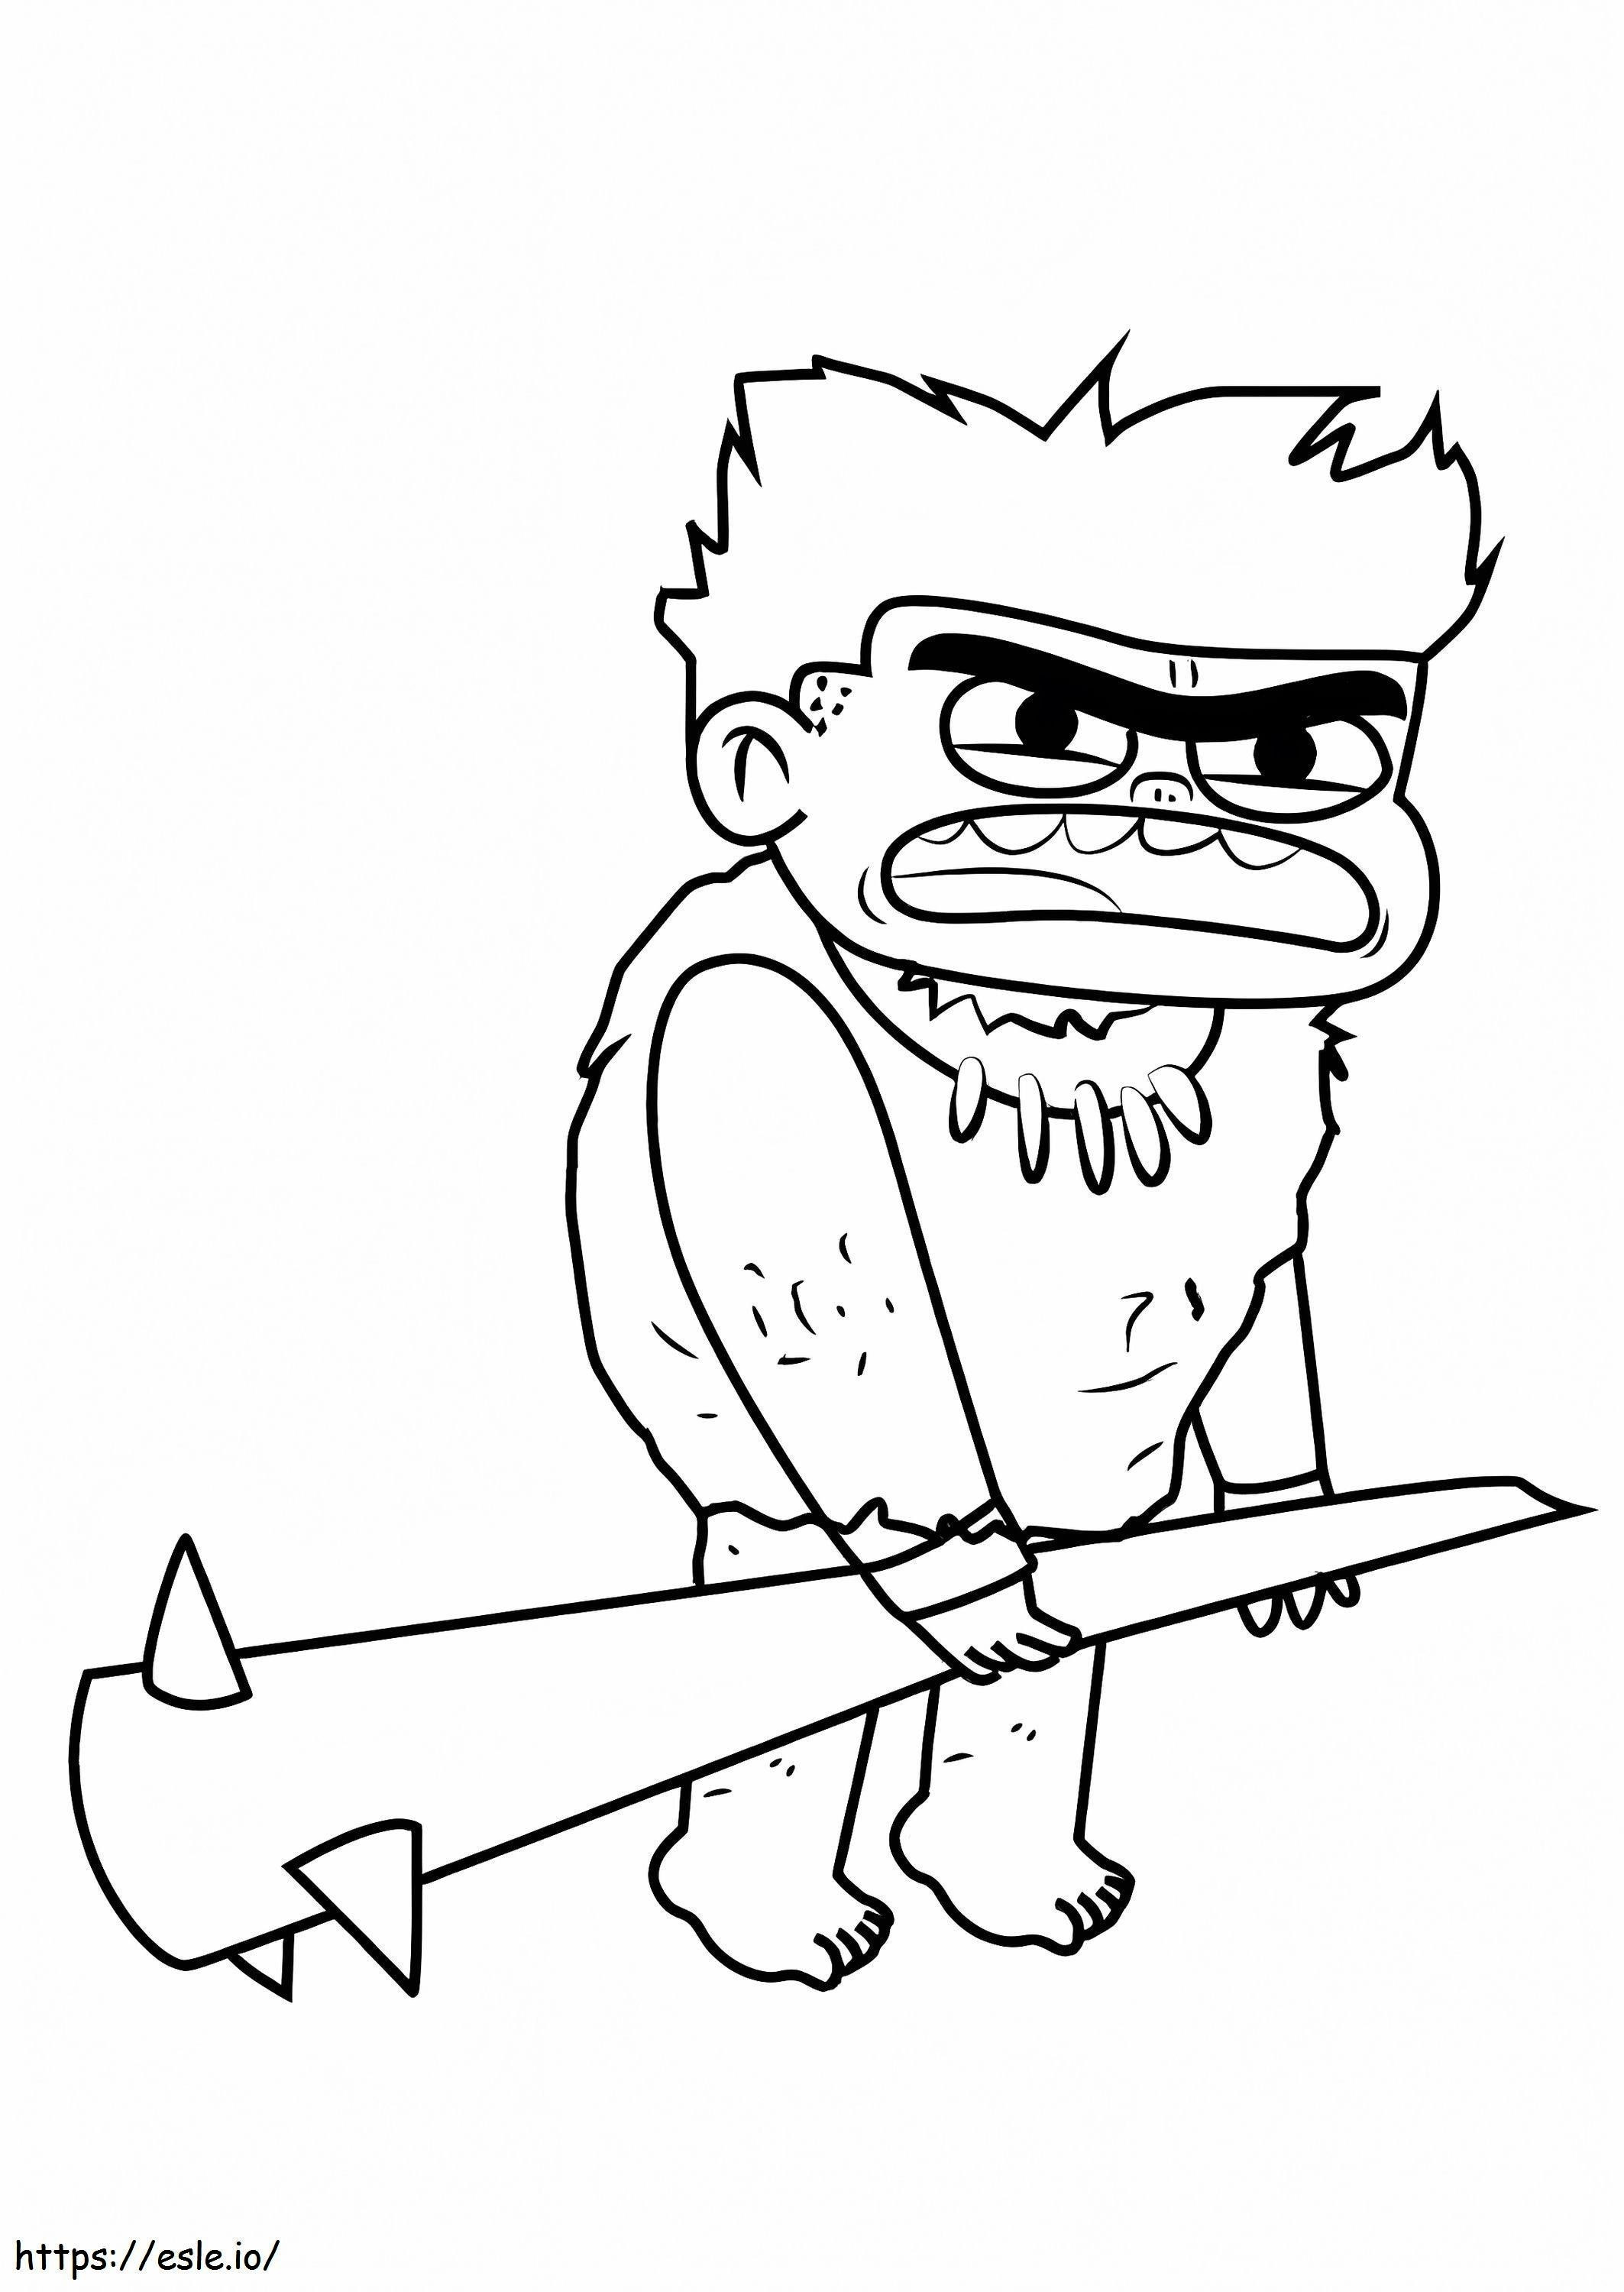 Angry Caveman coloring page